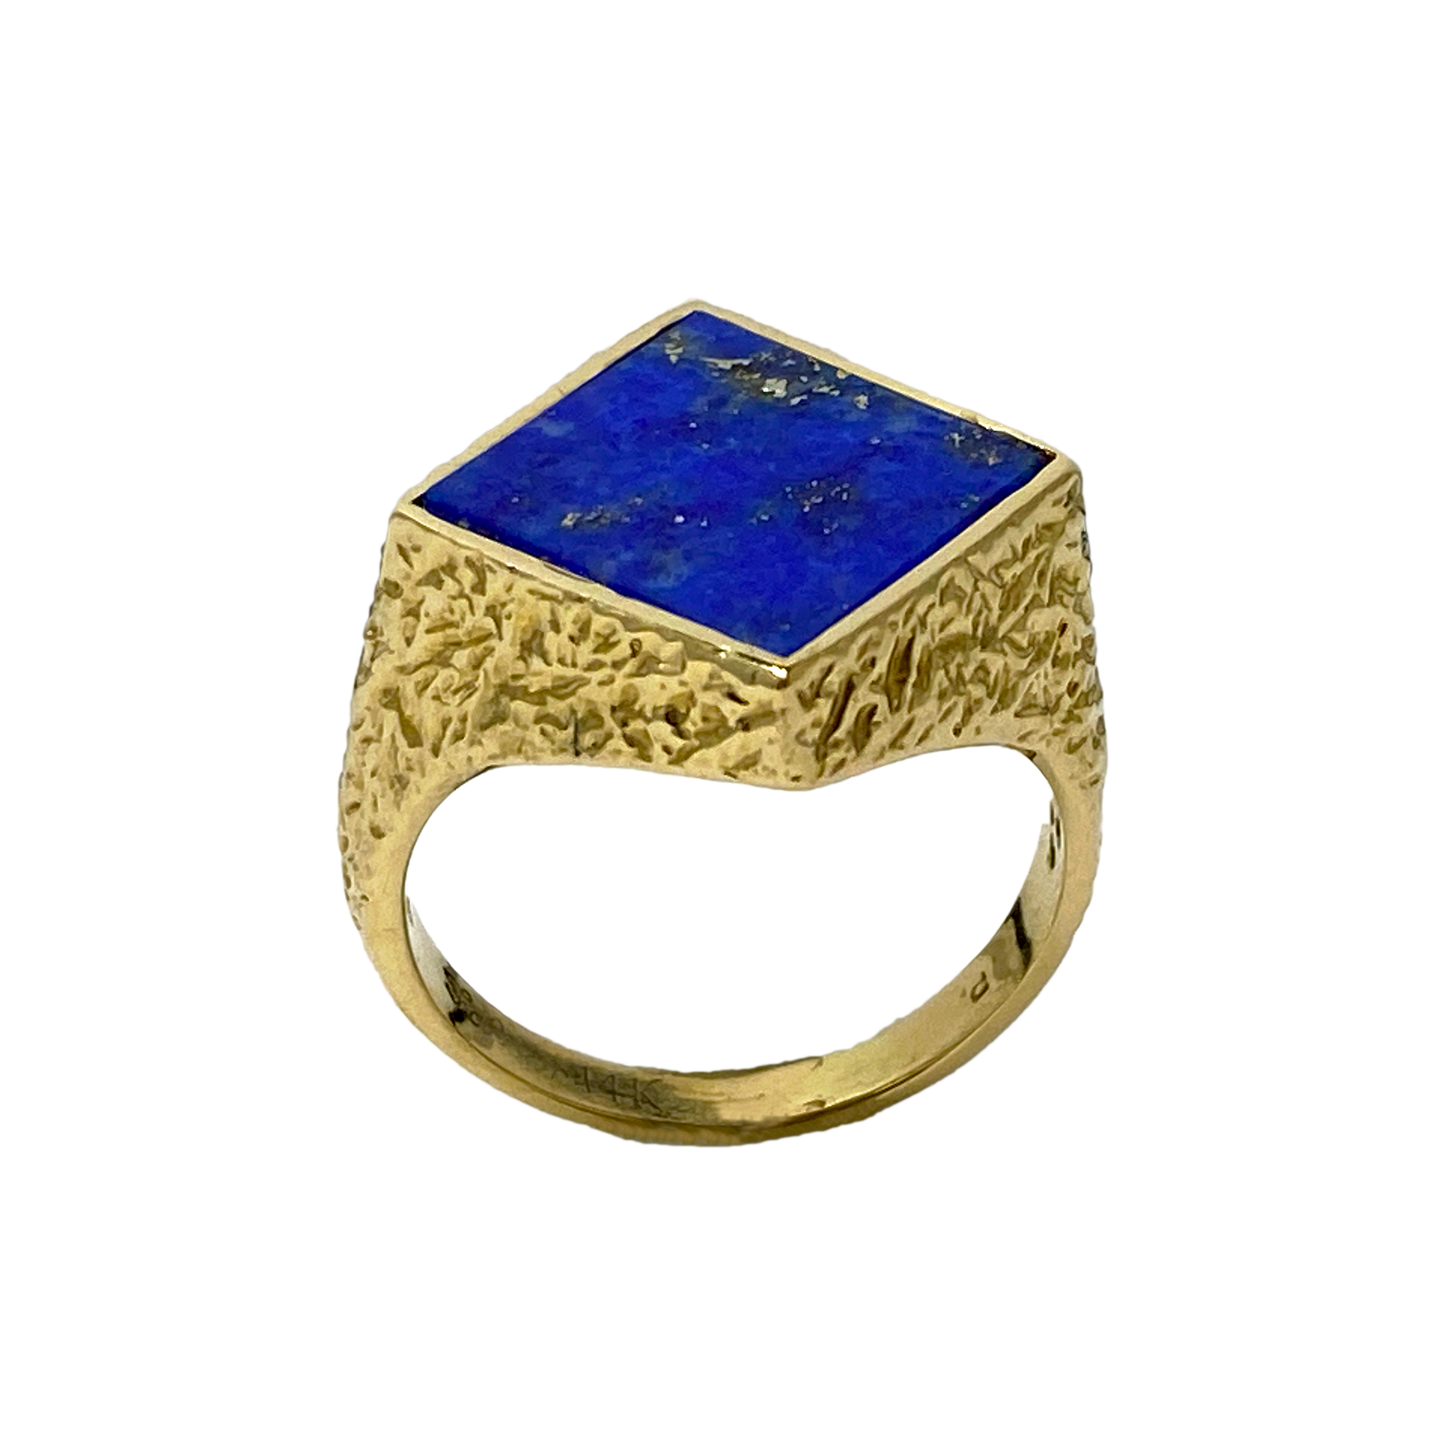 Vintage Square Lapis Lazuli 14K Yellow Gold Ring